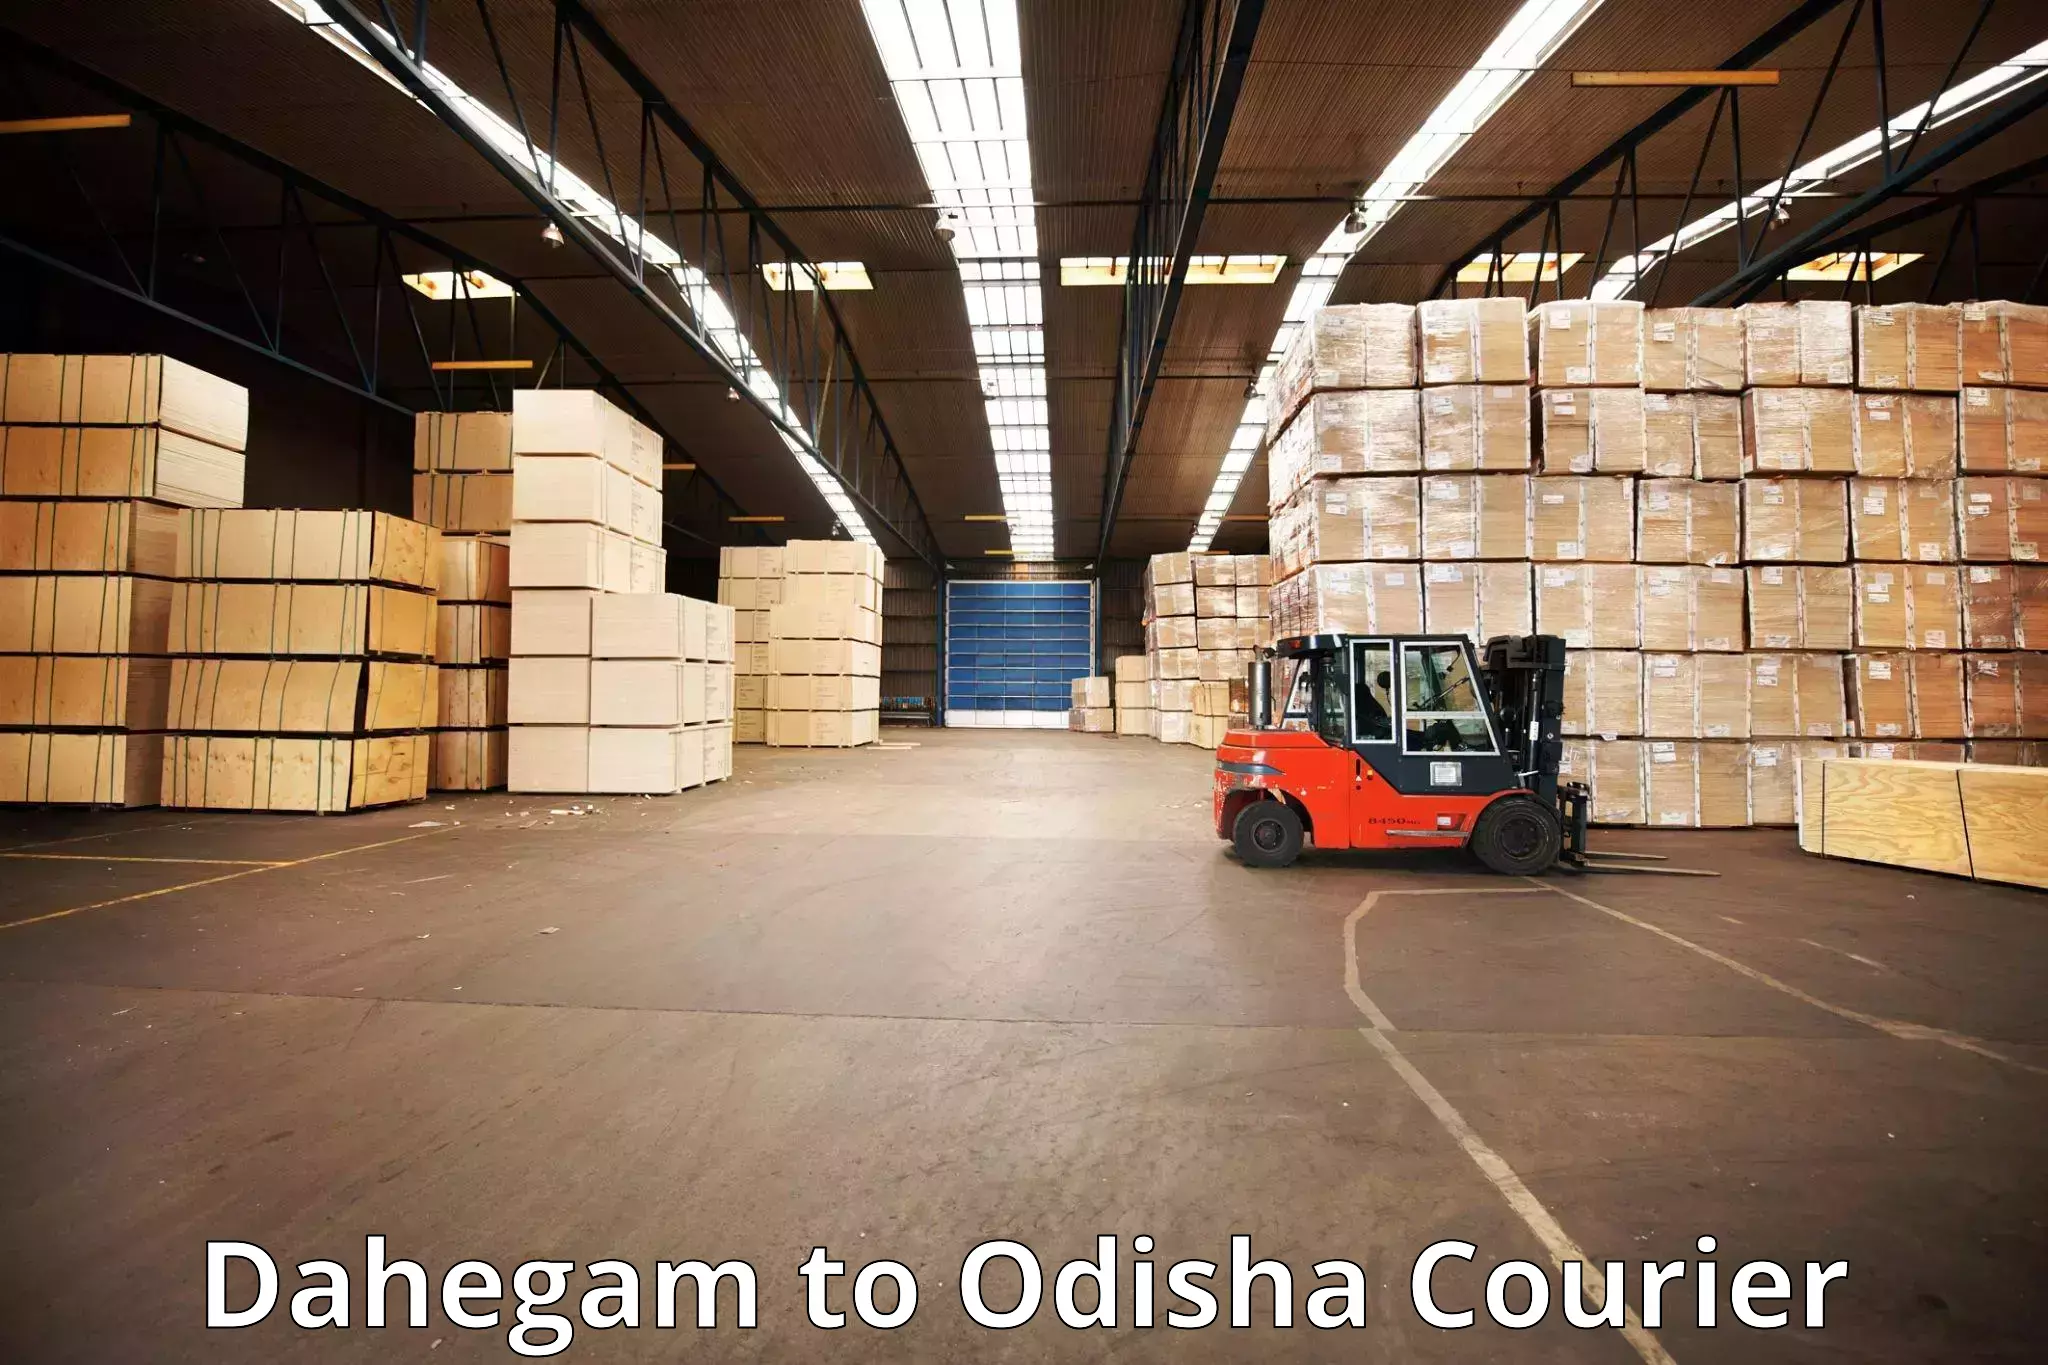 Luggage transport company Dahegam to Ukhunda